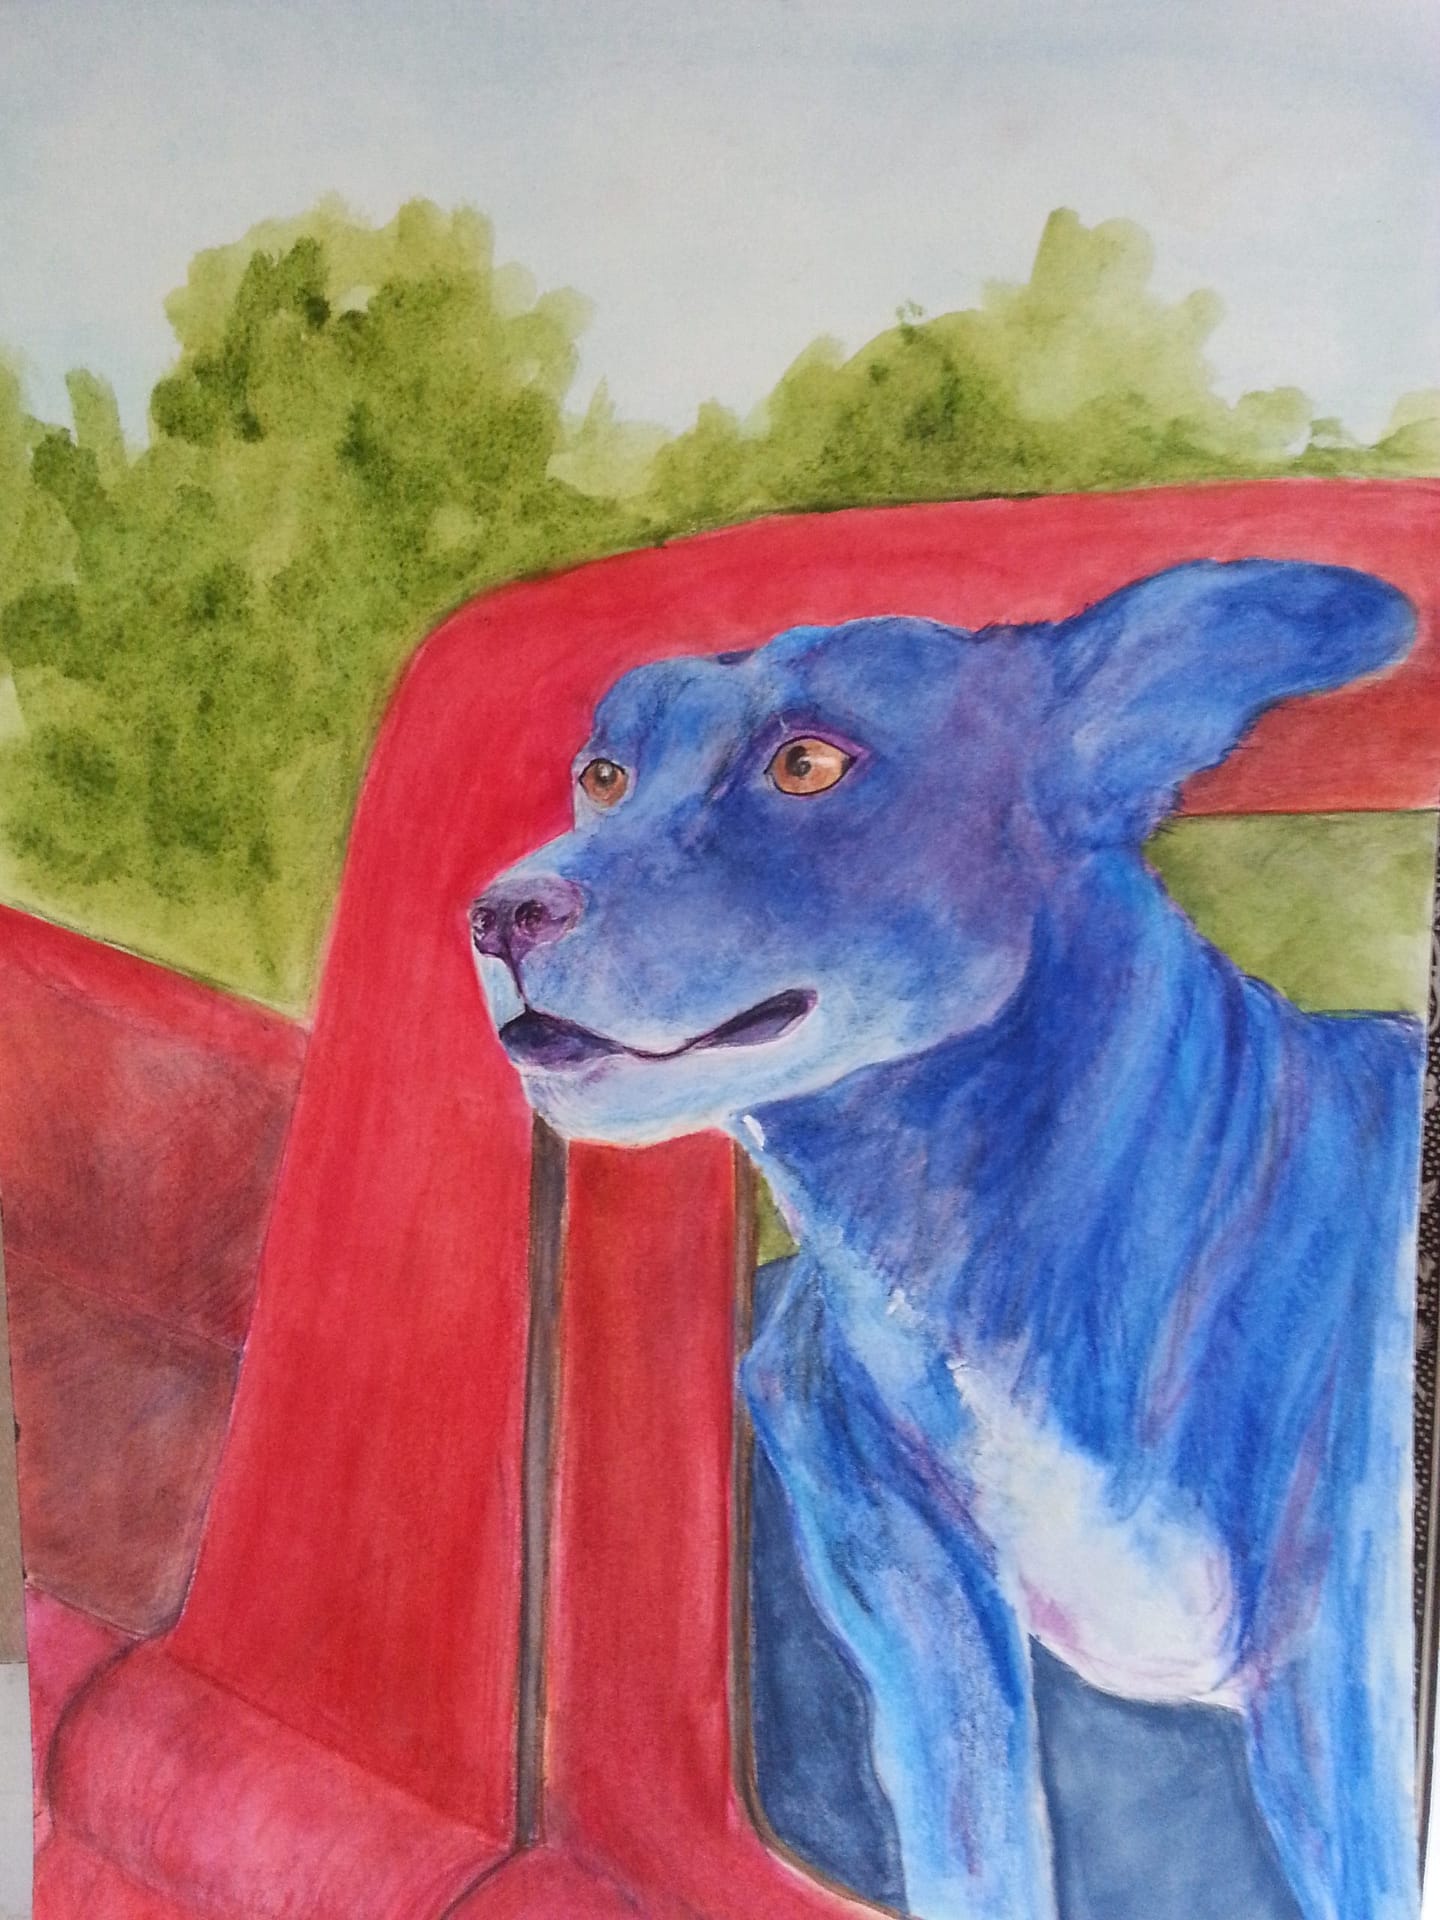 watercolor watercolor pencil blue dog